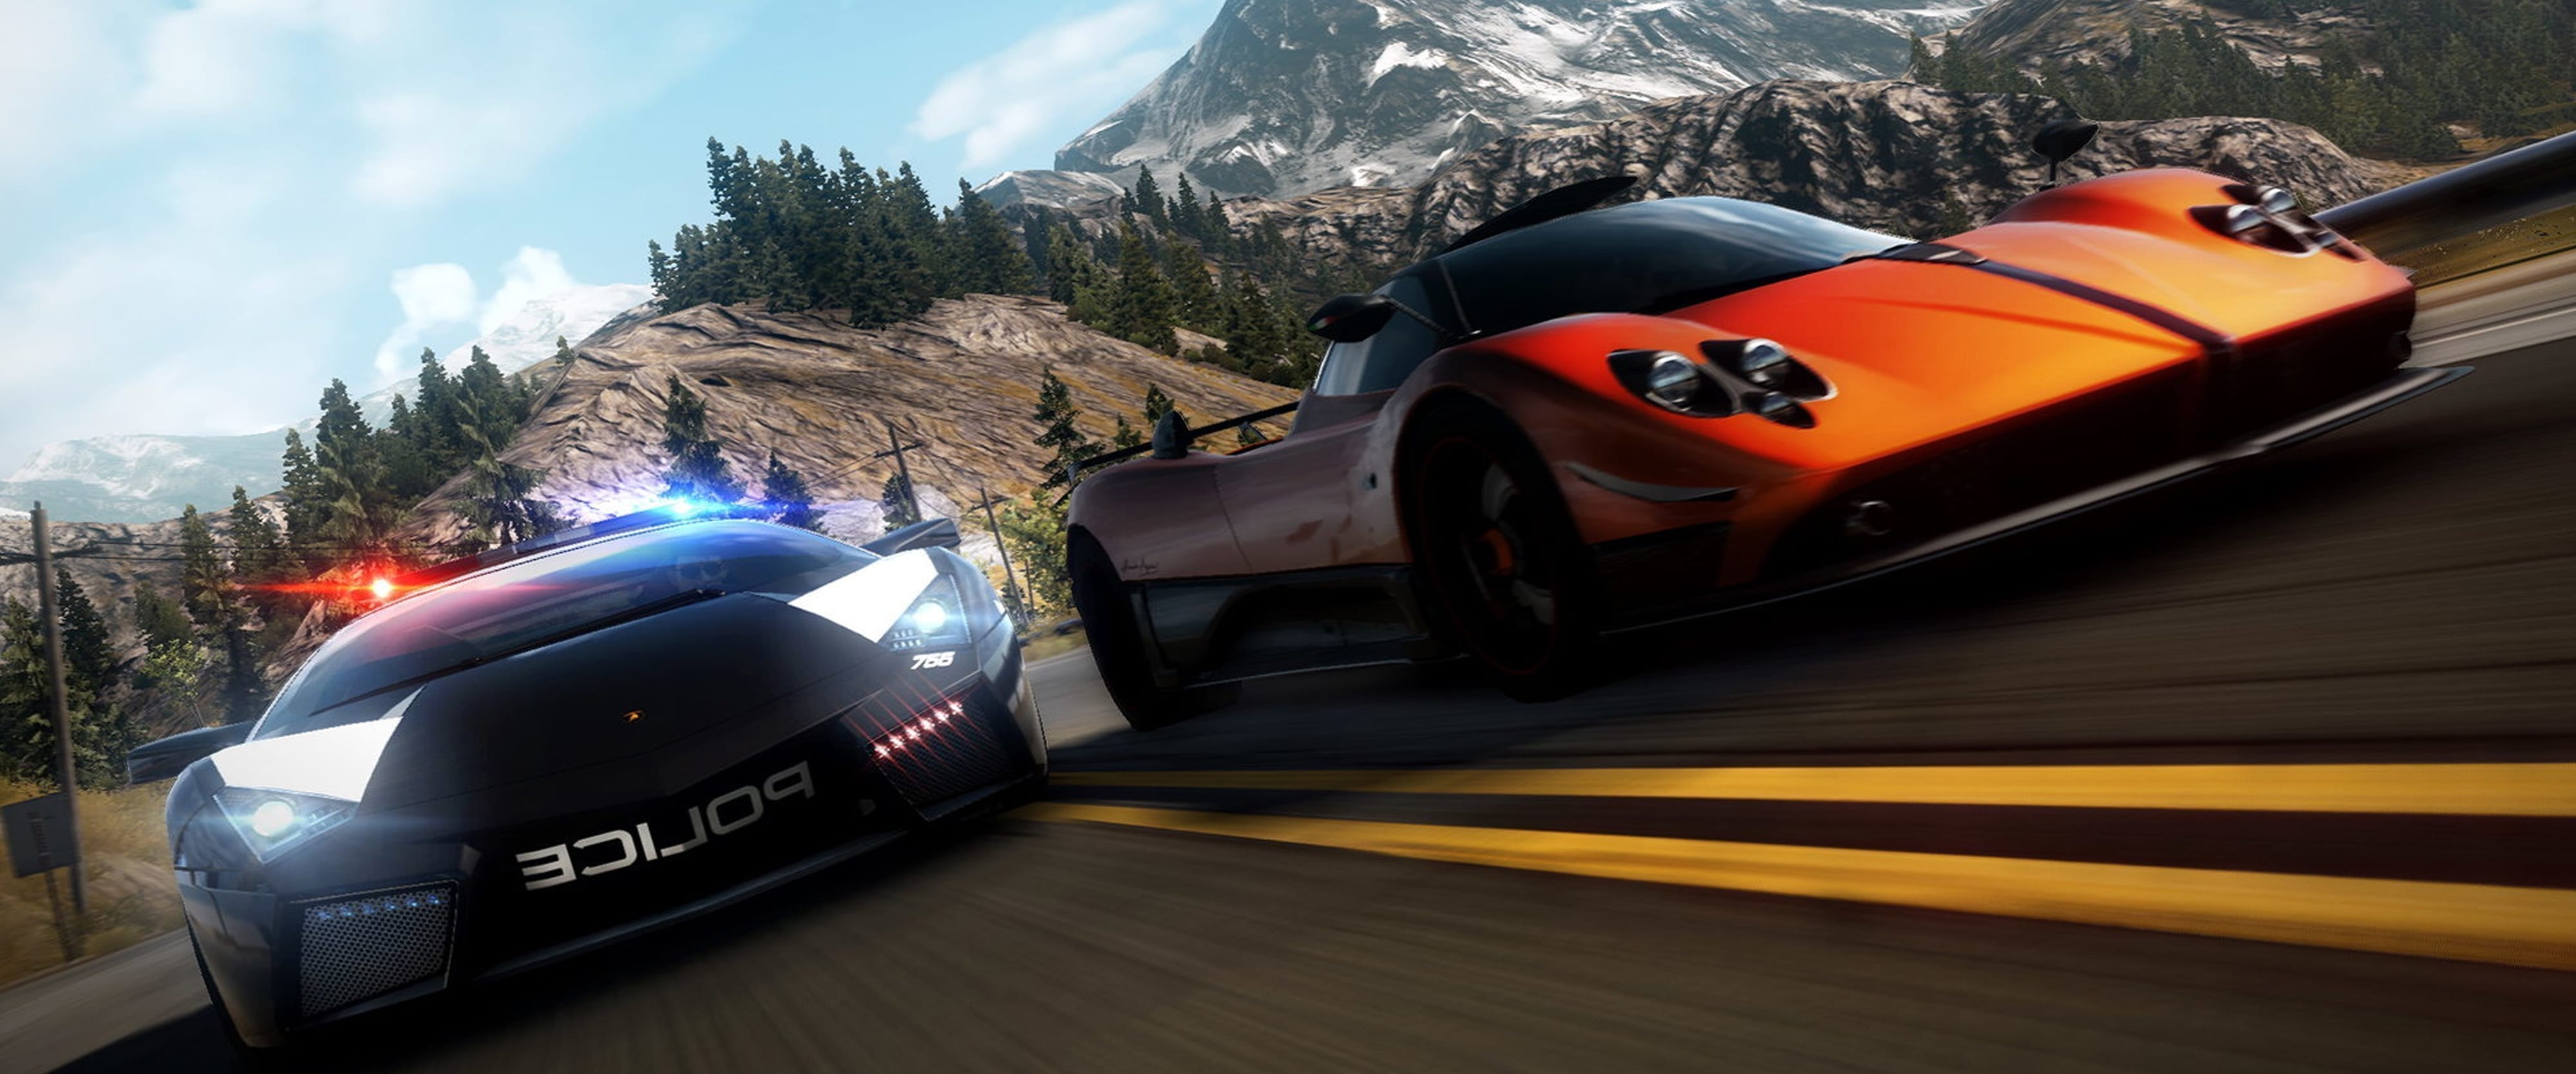 Нид фор спид хот персьют. Нфс hot Pursuit 2010. Need for Speed: hot Pursuit (2010). Need for Speed hot Pursuit Remastered Xbox. Xbox need for Speed hot Pursuit 2010.